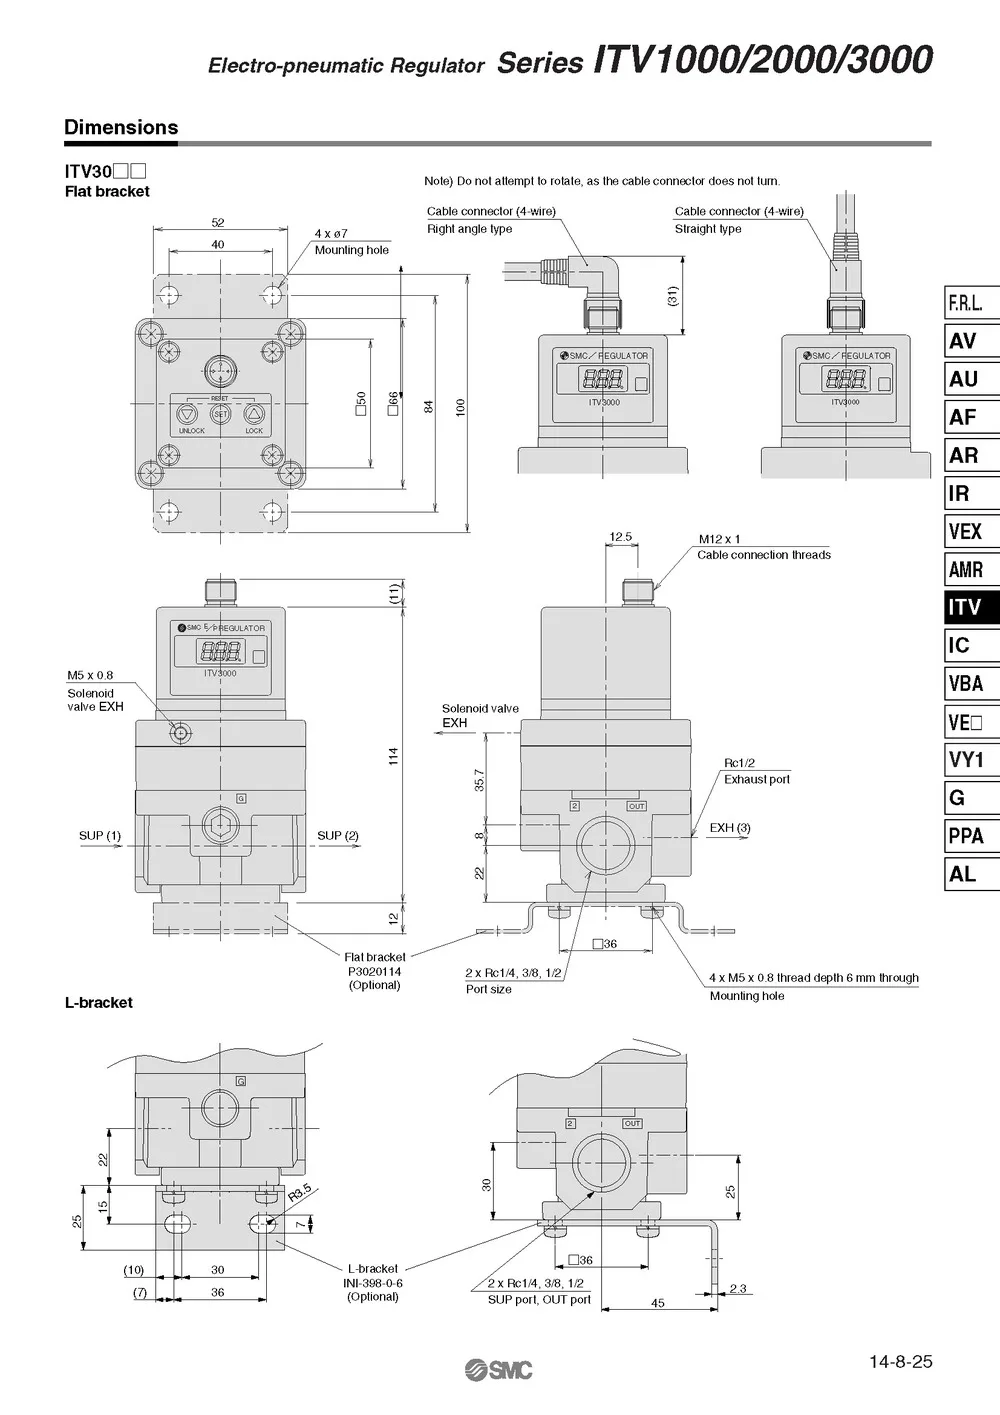 ITV1050-312L SMC электро-пневматический регулятор для пневматического оборудования контроль давления воздуха 100% Новый оригинальный